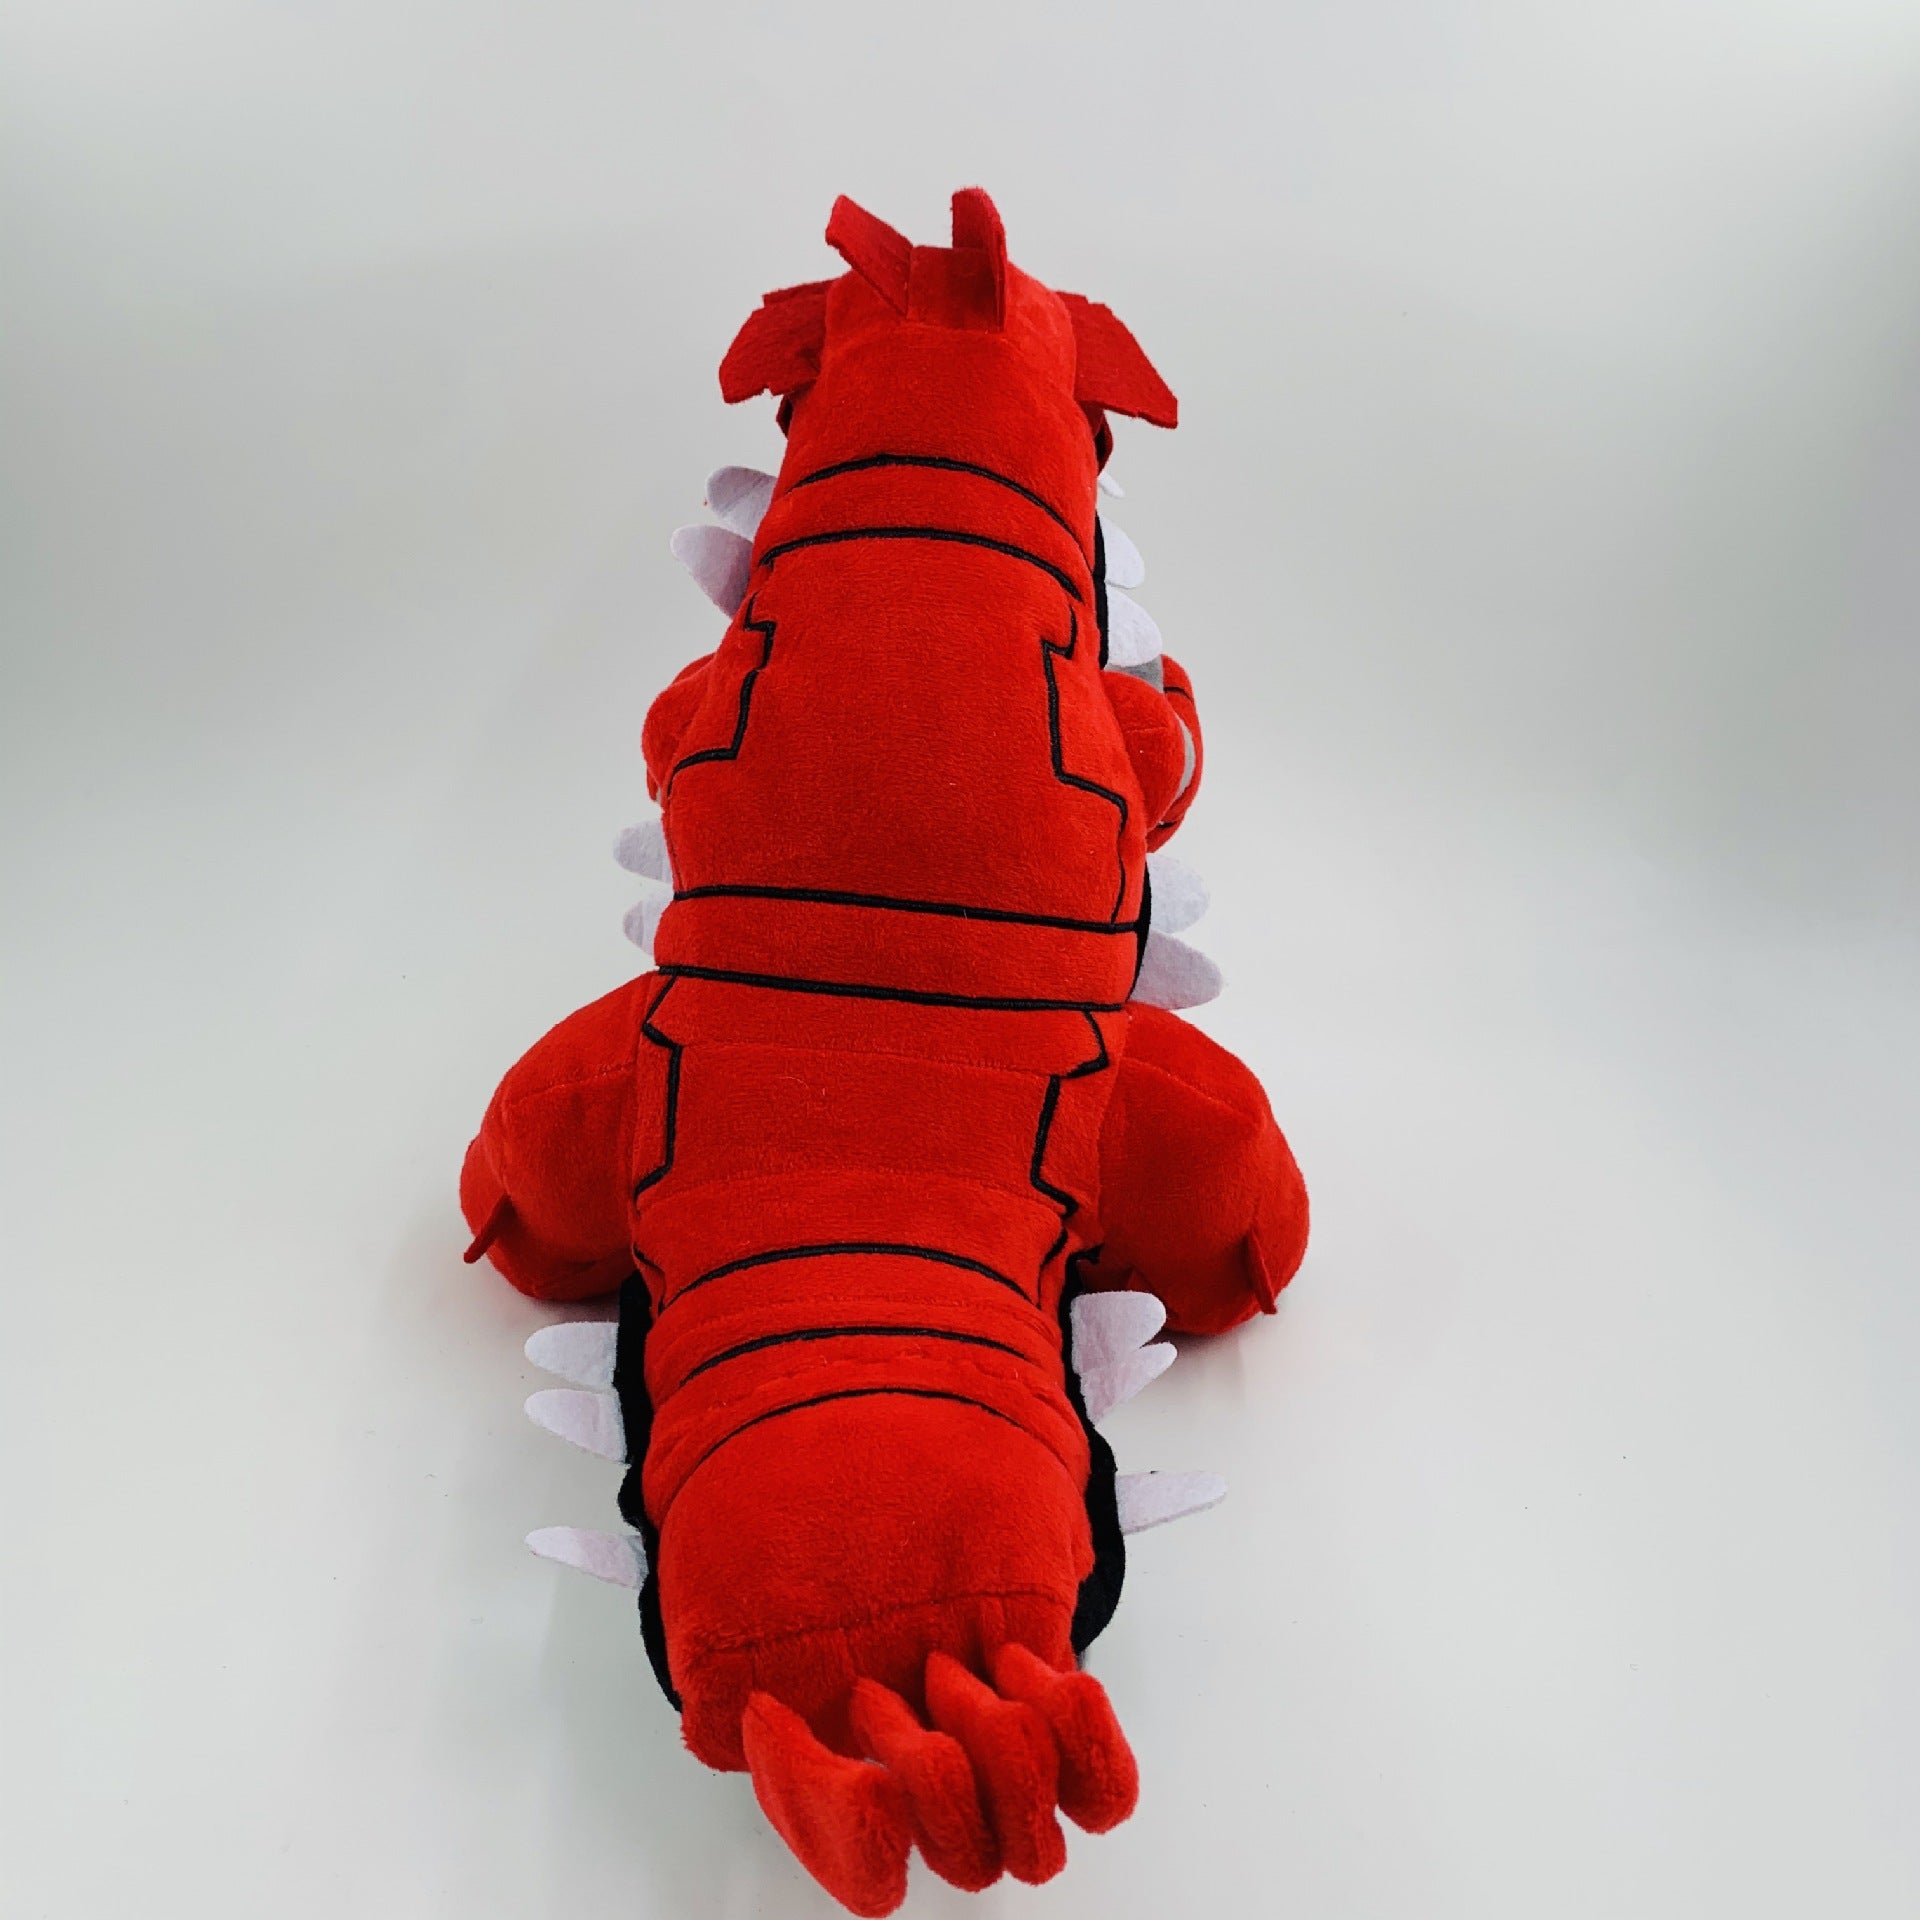 Large Red King Dragon Dinosaur Plush Plush